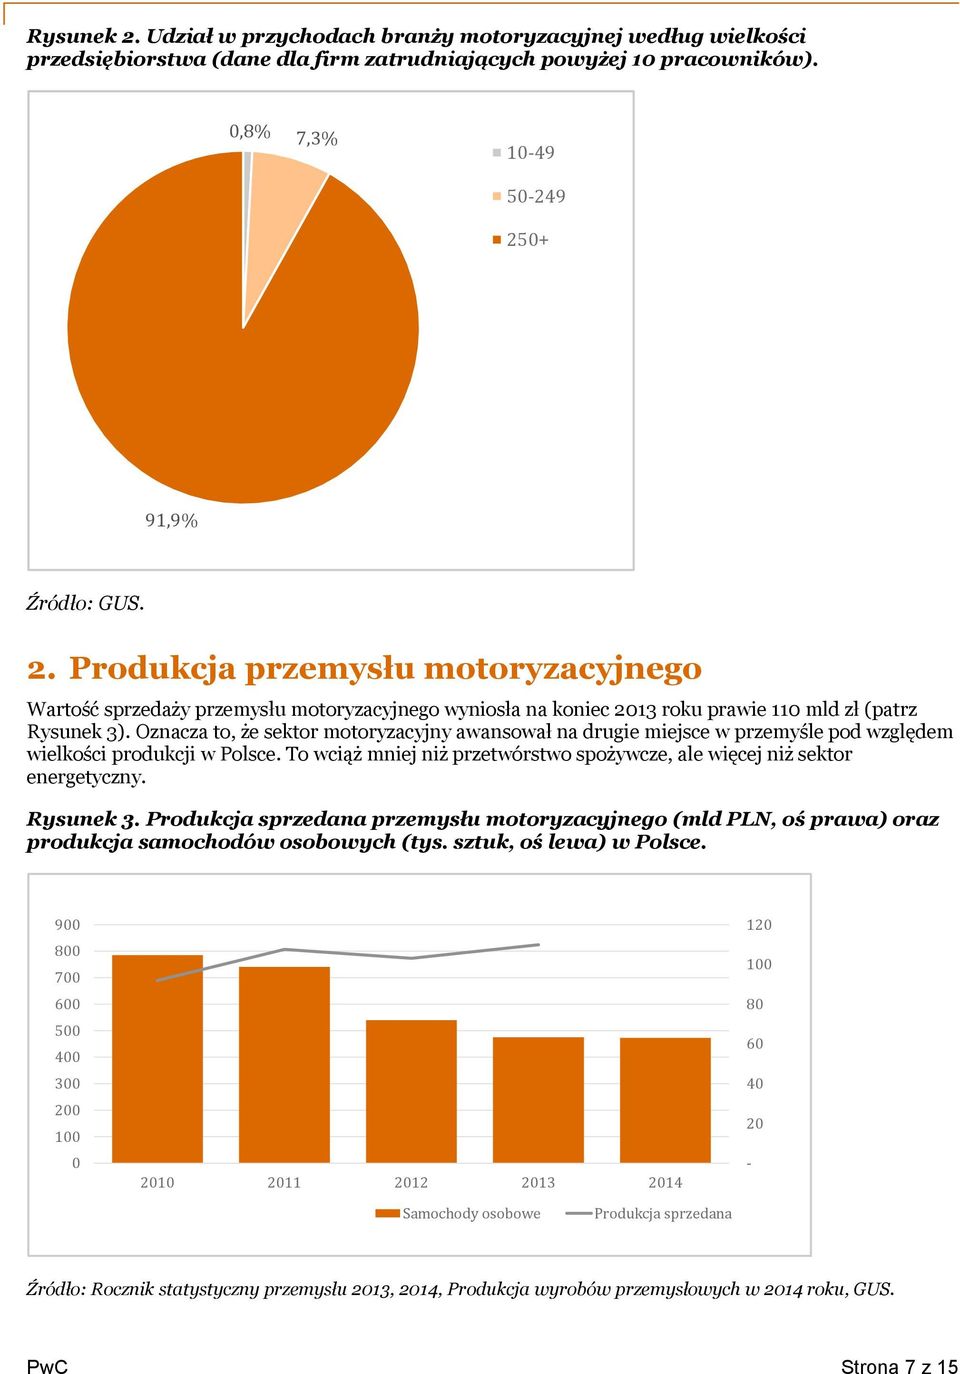 Rysunek 3. Produkcja sprzedana przemysłu motoryzacyjnego (mld PLN, oś prawa) oraz produkcja samochodów osobowych (tys. sztuk, oś lewa) w Polsce.